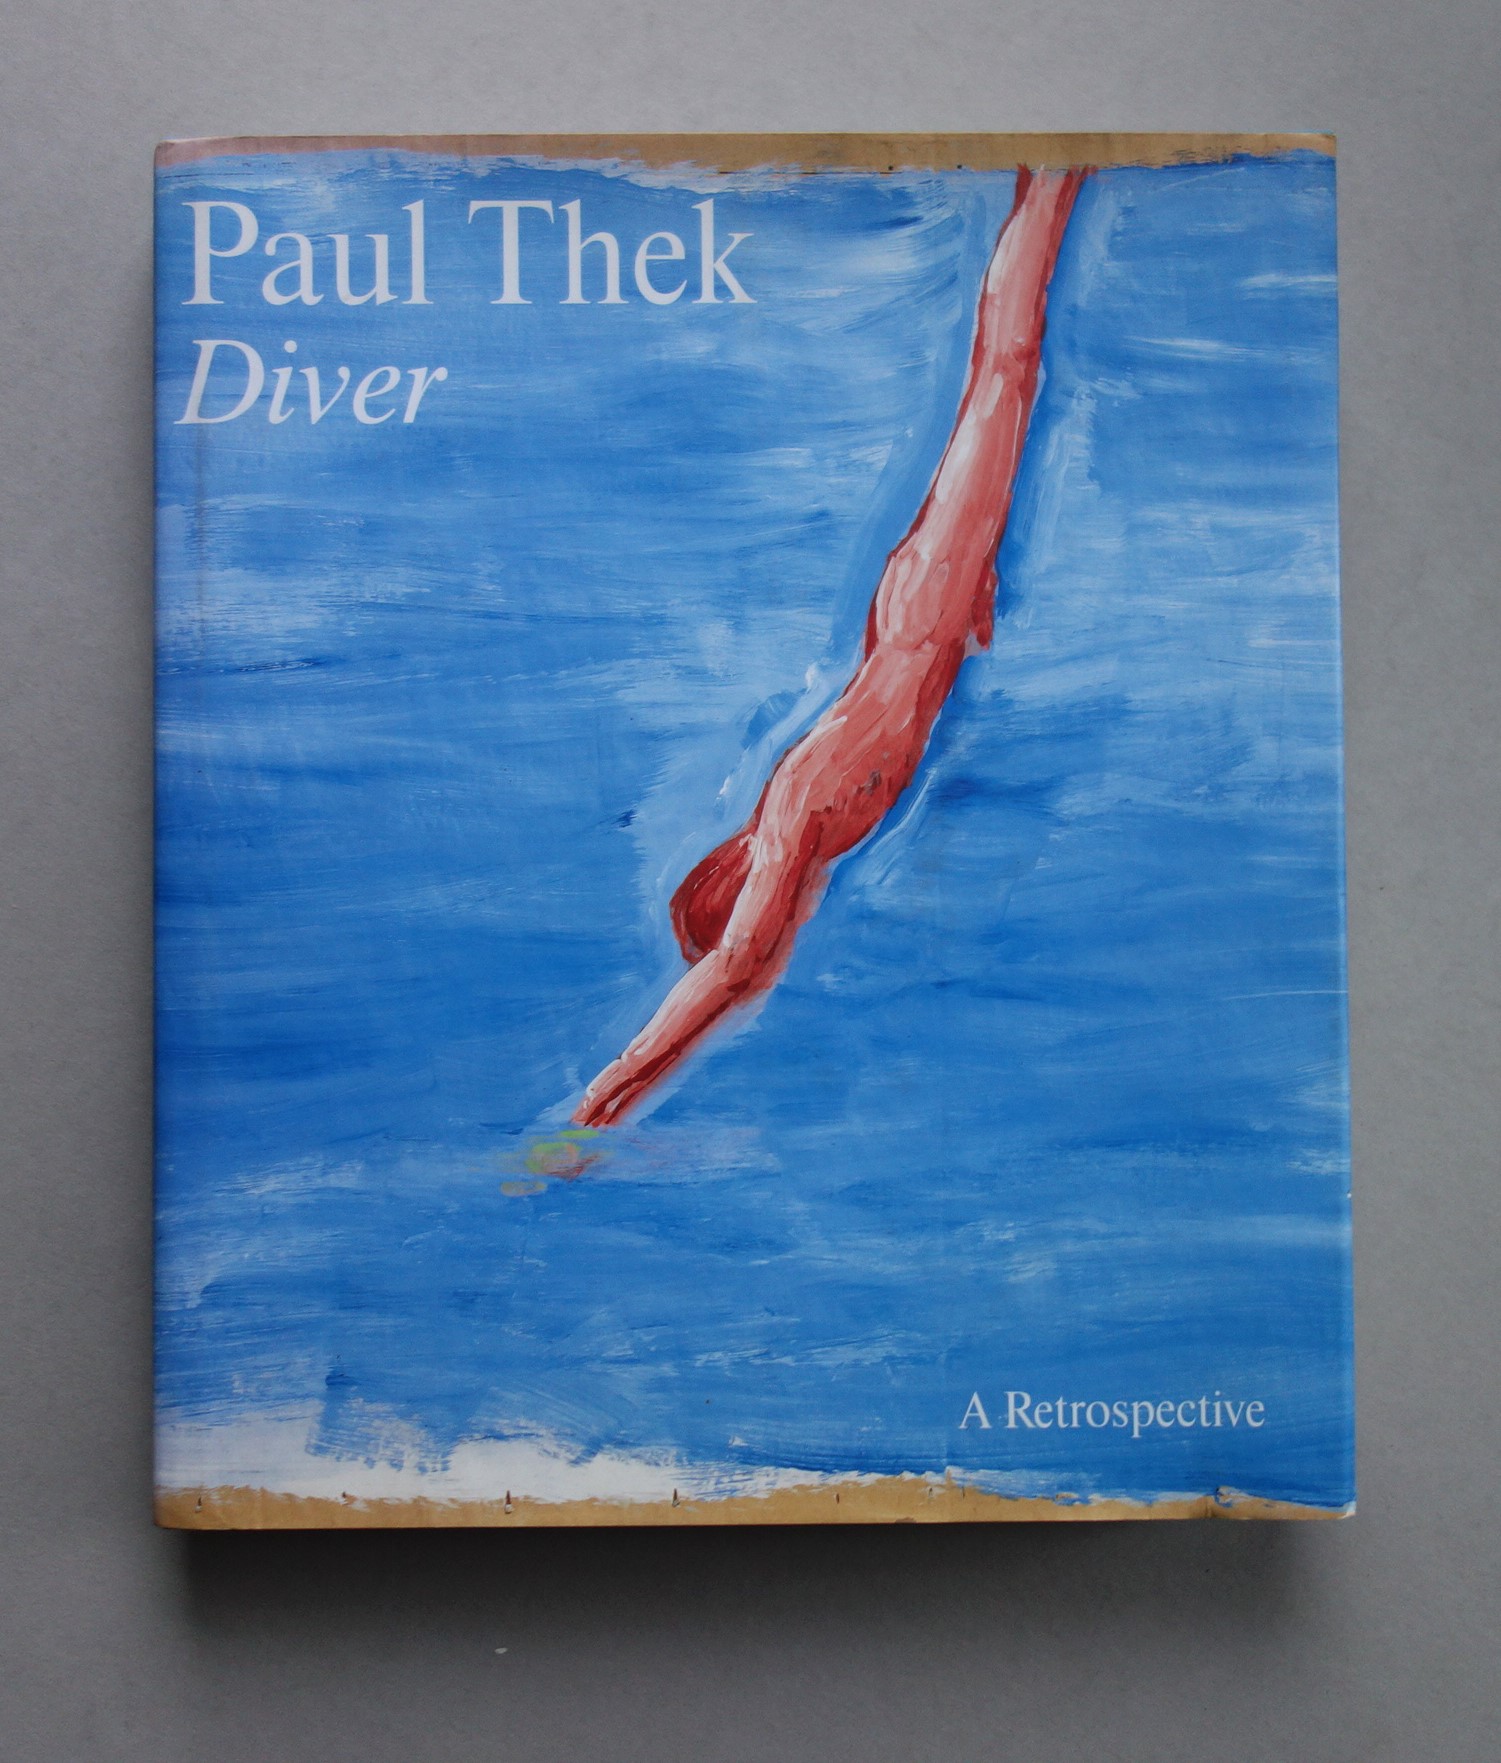 Paul Thek: Diver. - A Retrospective. - Paul Thek